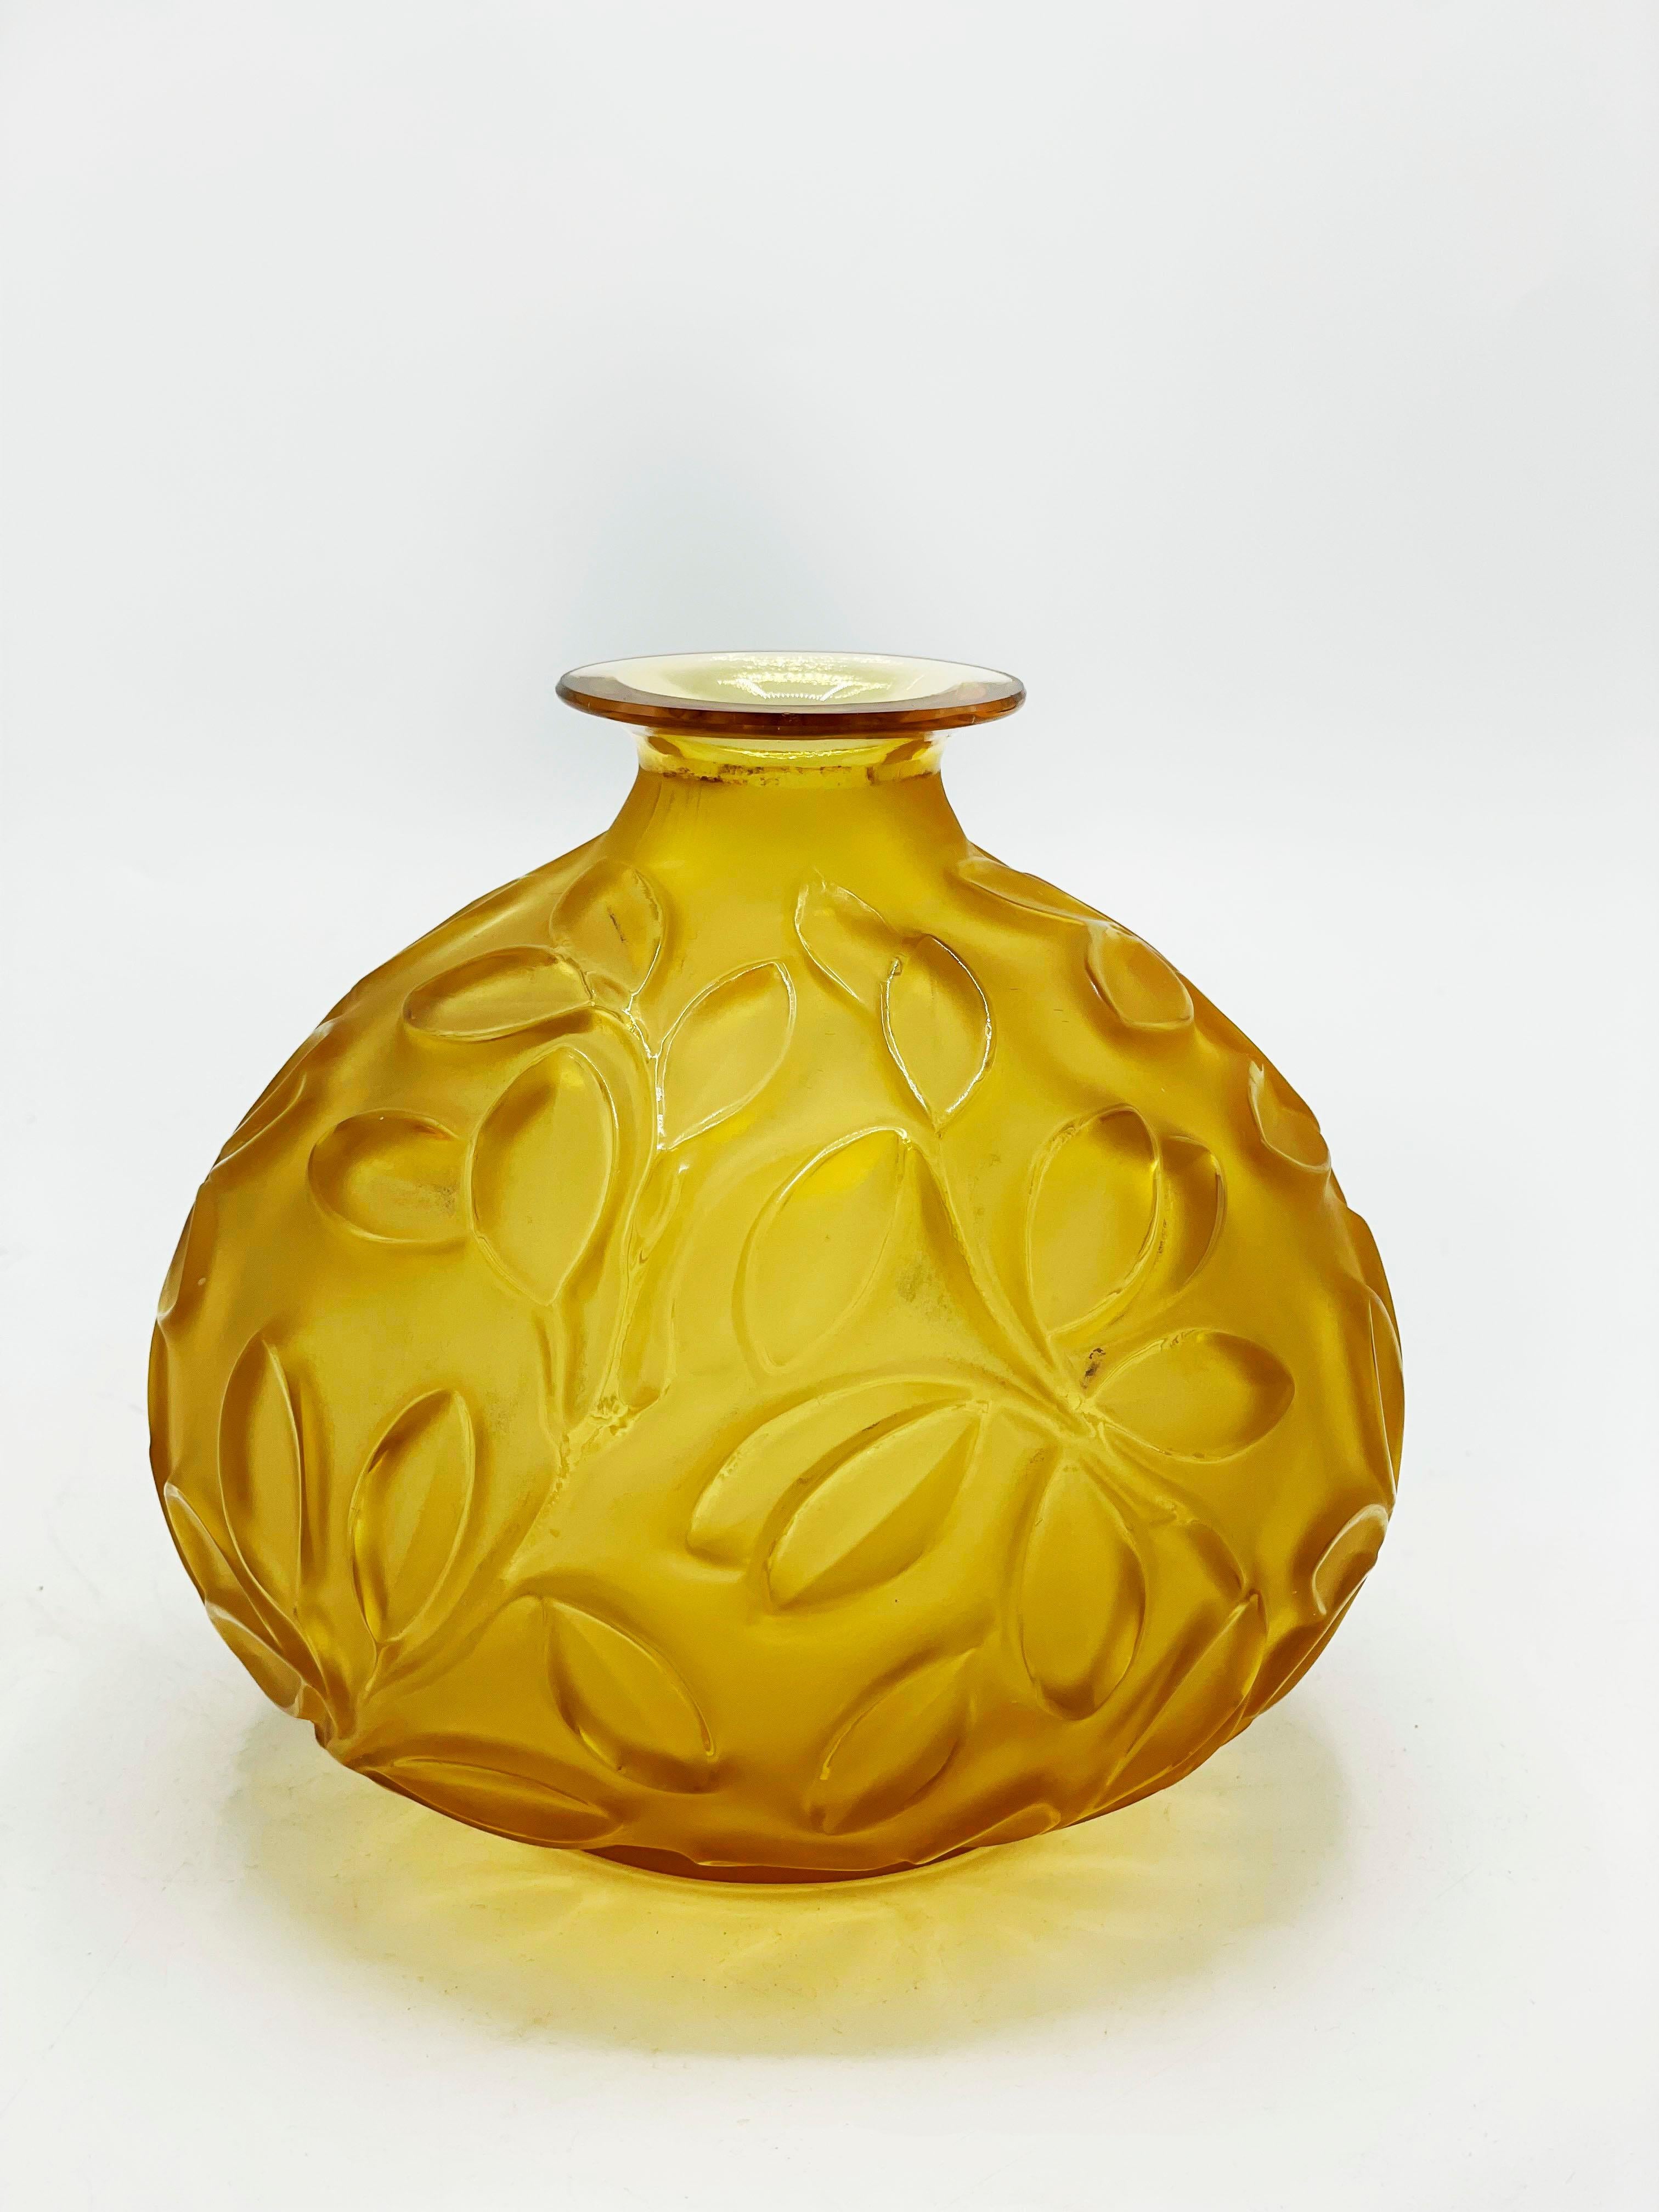 Sabino Art Deco-Glasvase
Schöne Sabino Vase in gelbem Glas mit einem Design von Zweigen mit Blättern, die es noch mehr durch das Relief hervorhebt.
Maßnahmen:
Höhe: 13 Zentimeter
Durchmesser: 12.5 Zentimeter